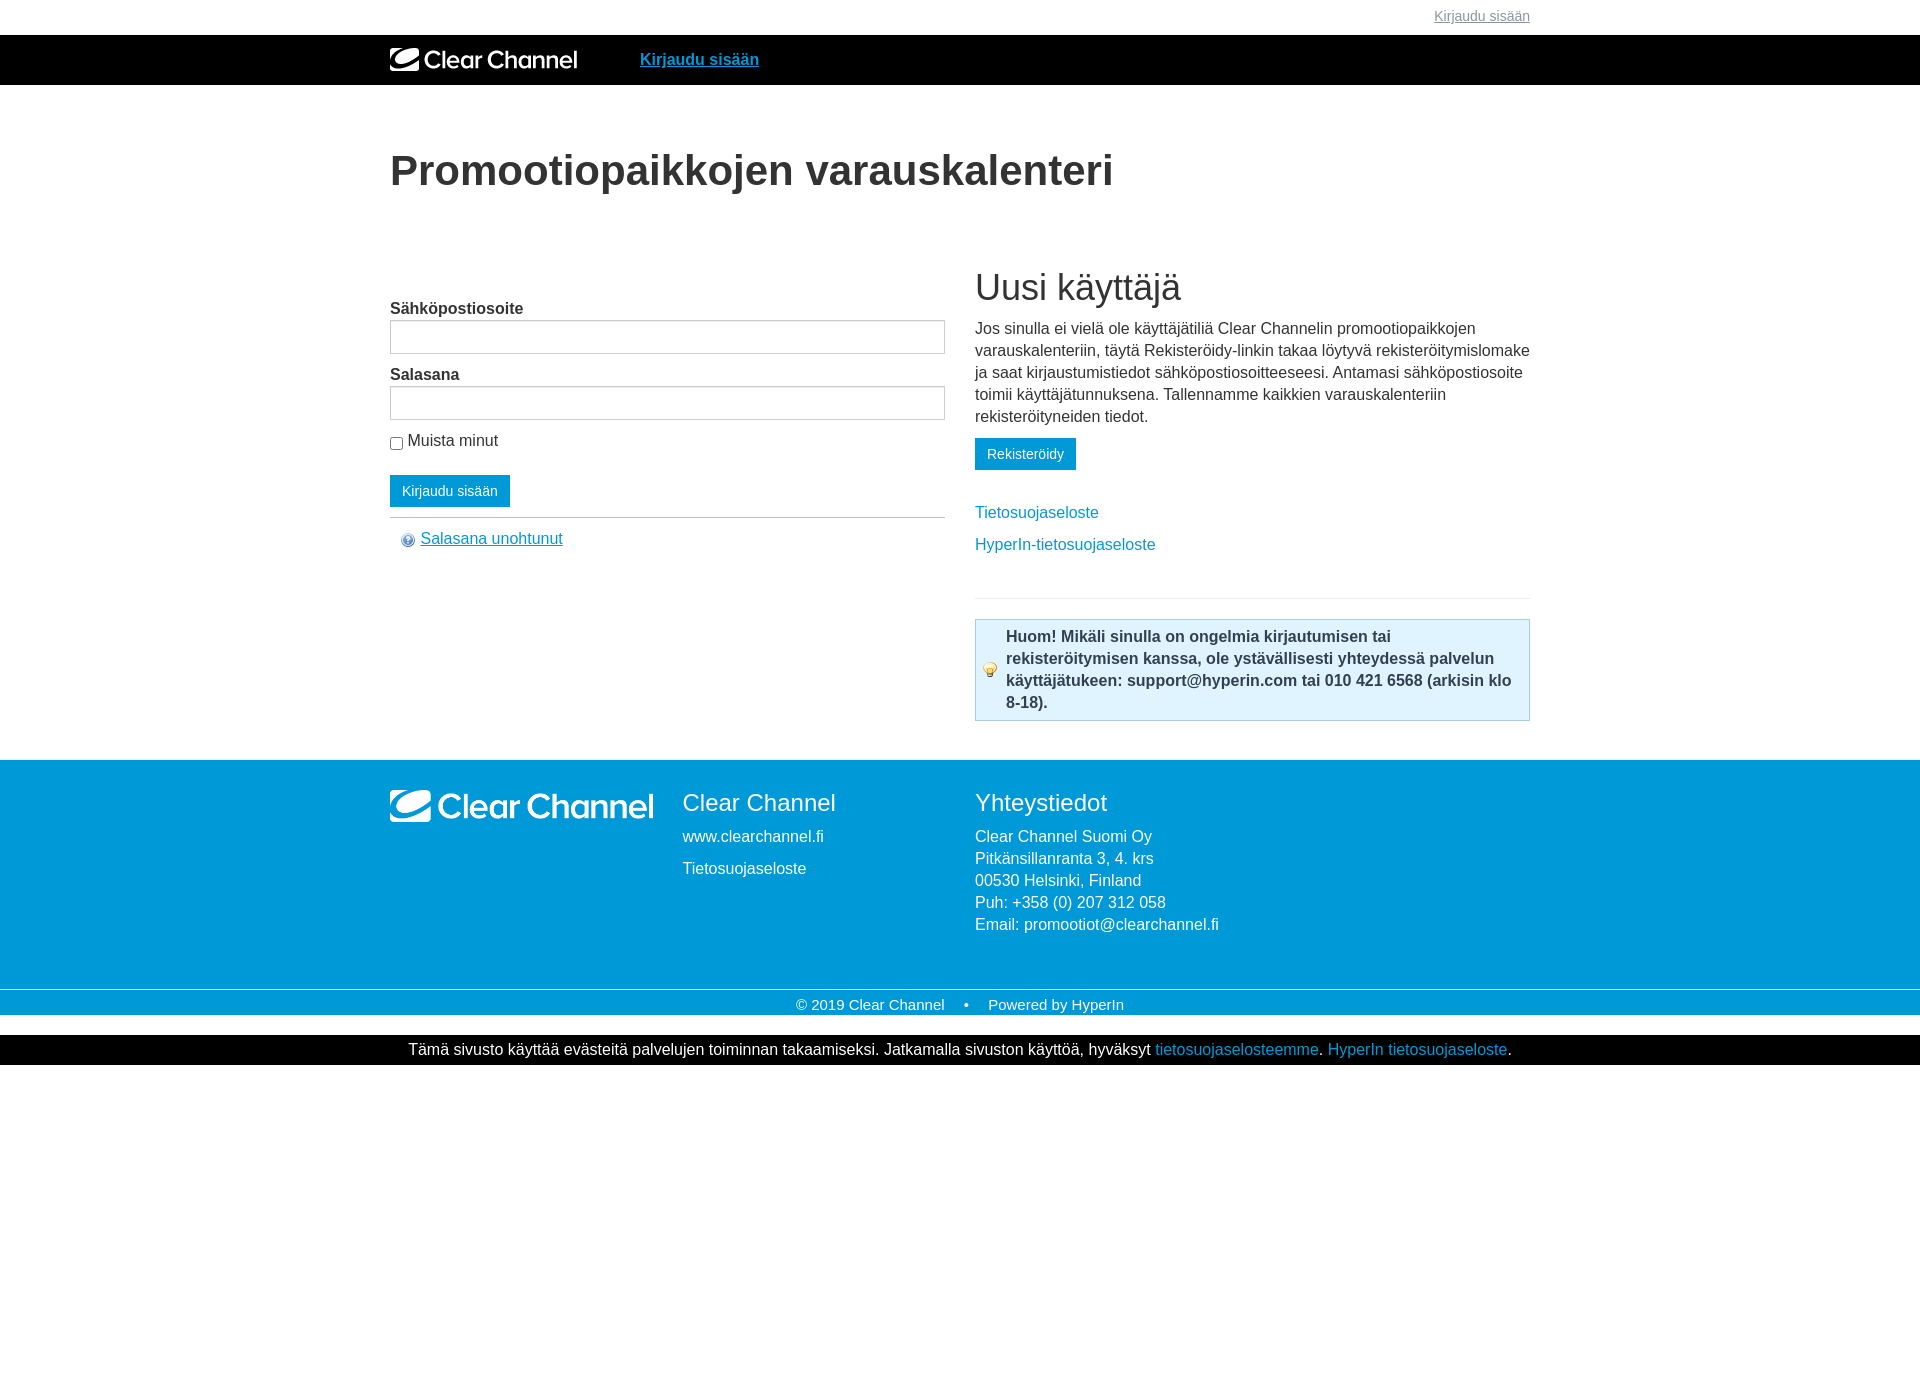 Skärmdump för promootiopaikka.fi